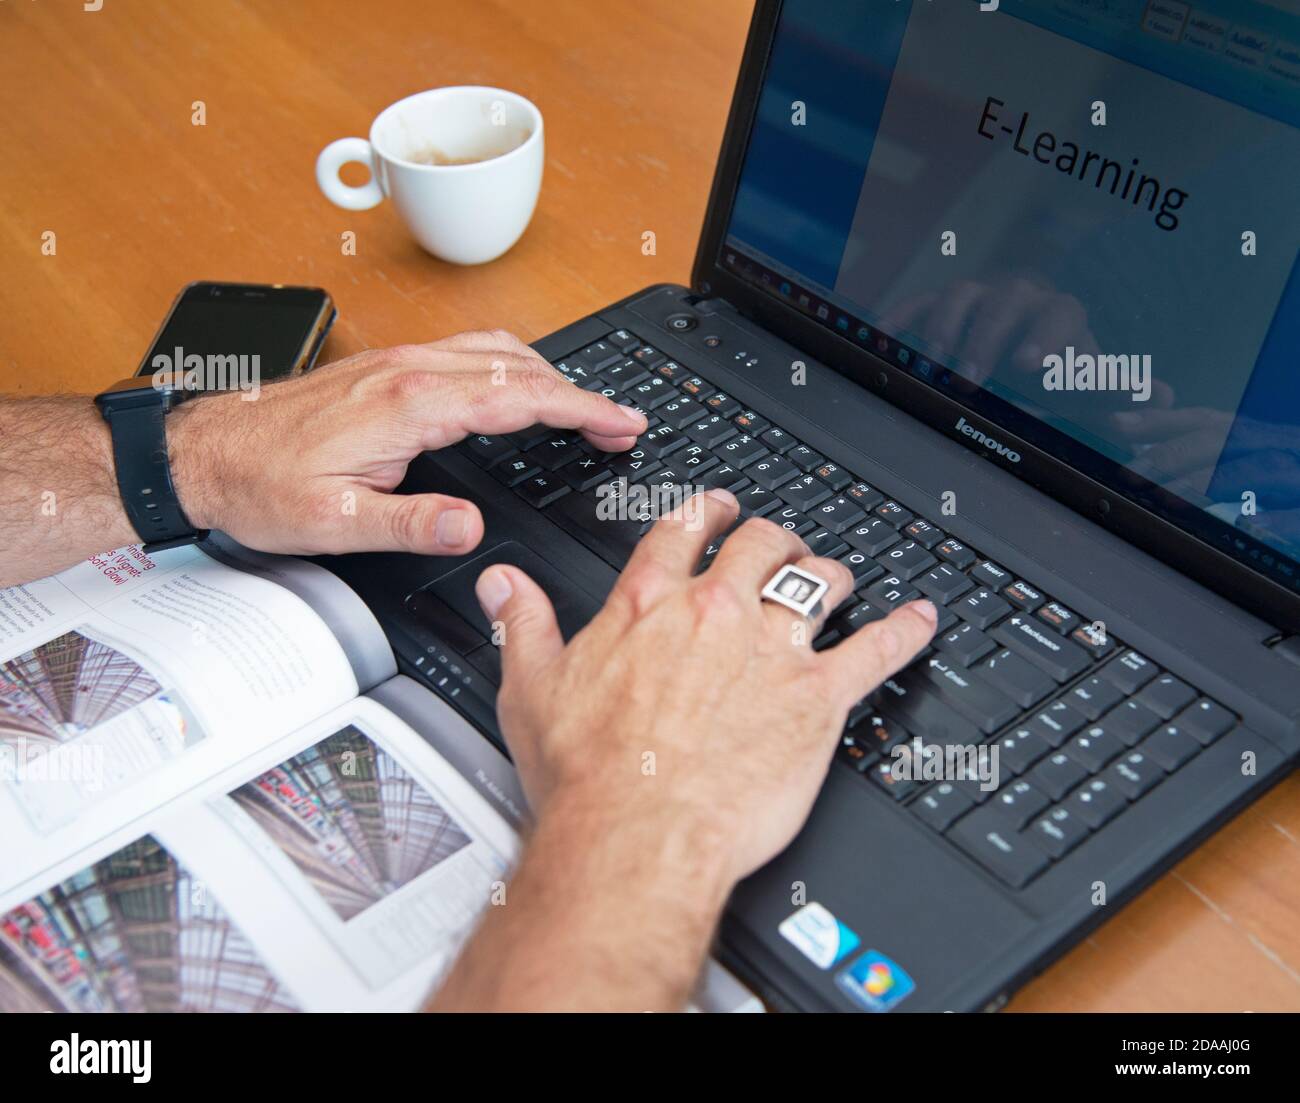 Uomo di mezza età che usa un computer portatile per un corso di formazione a distanza. Concetto : e-learning, webminar. Foto Stock